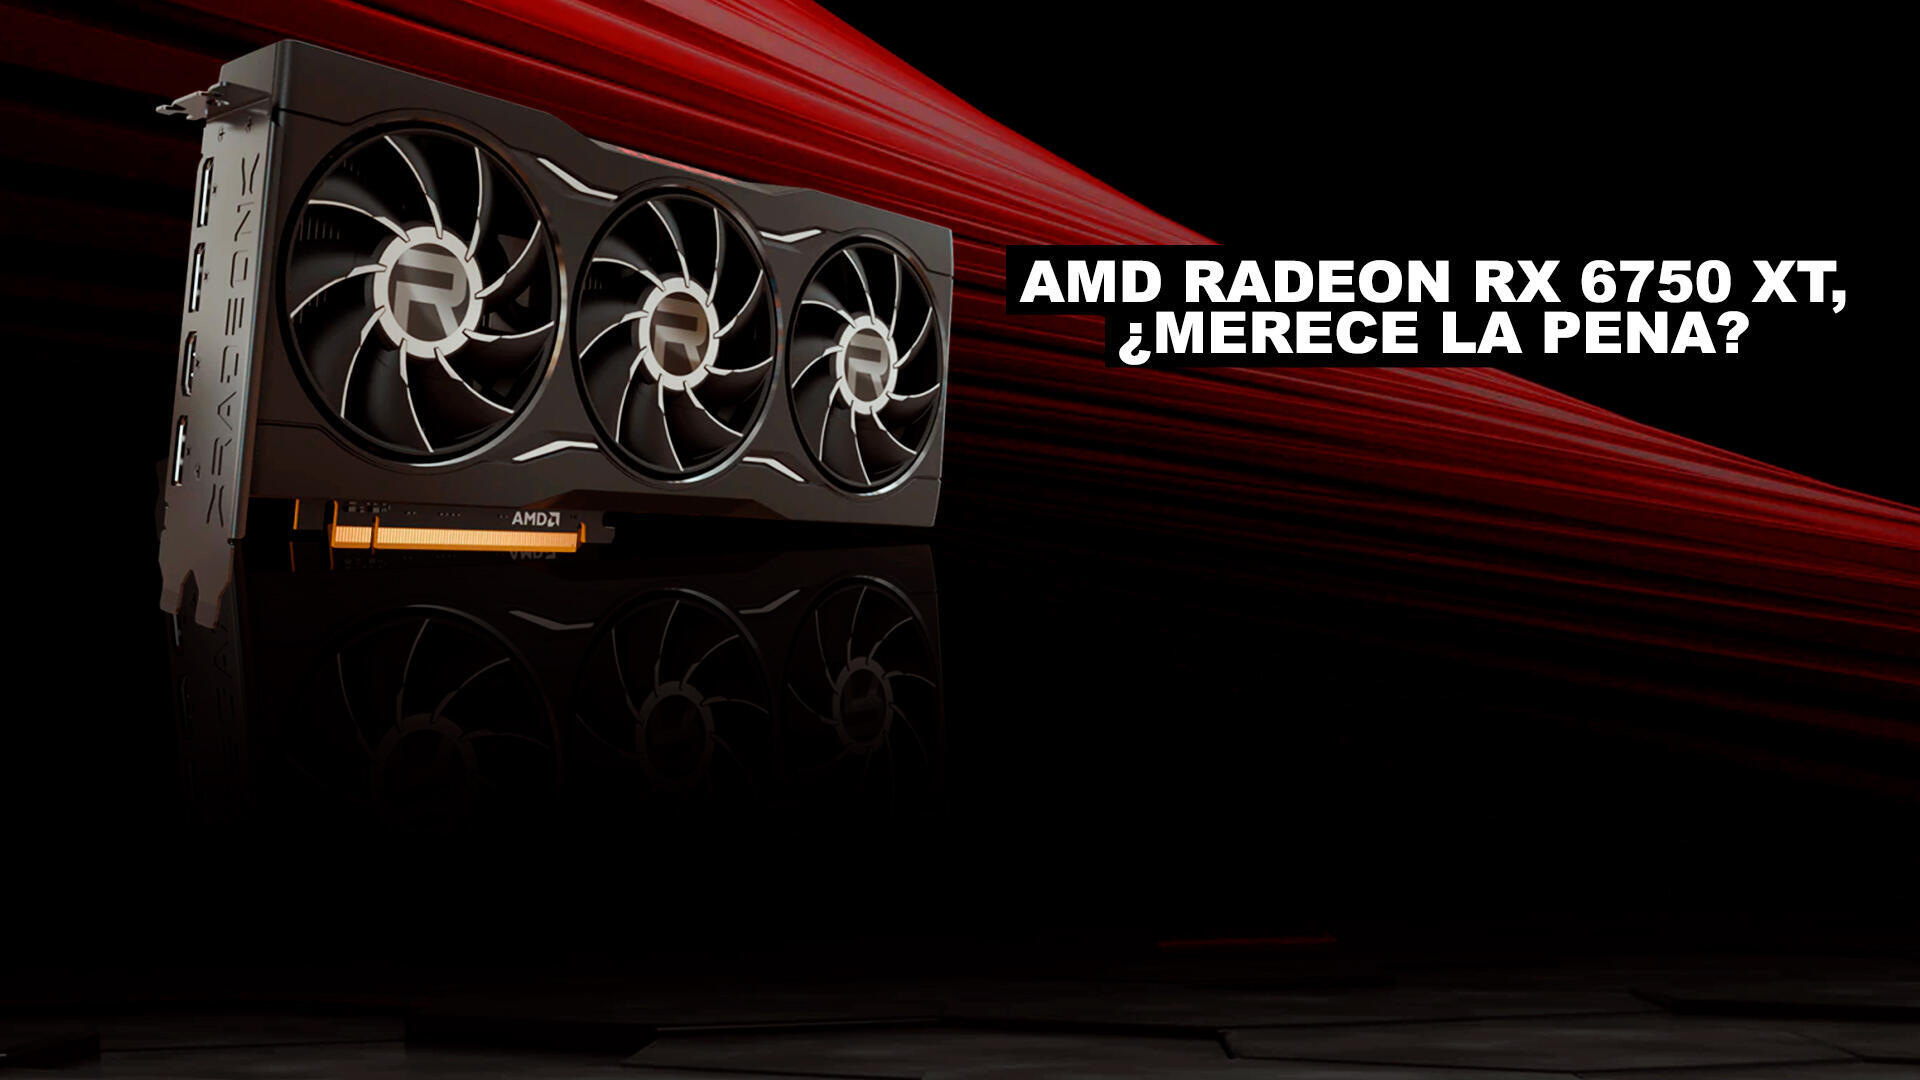 Anlisis AMD Radeon RX 6750 XT, merece la pena?